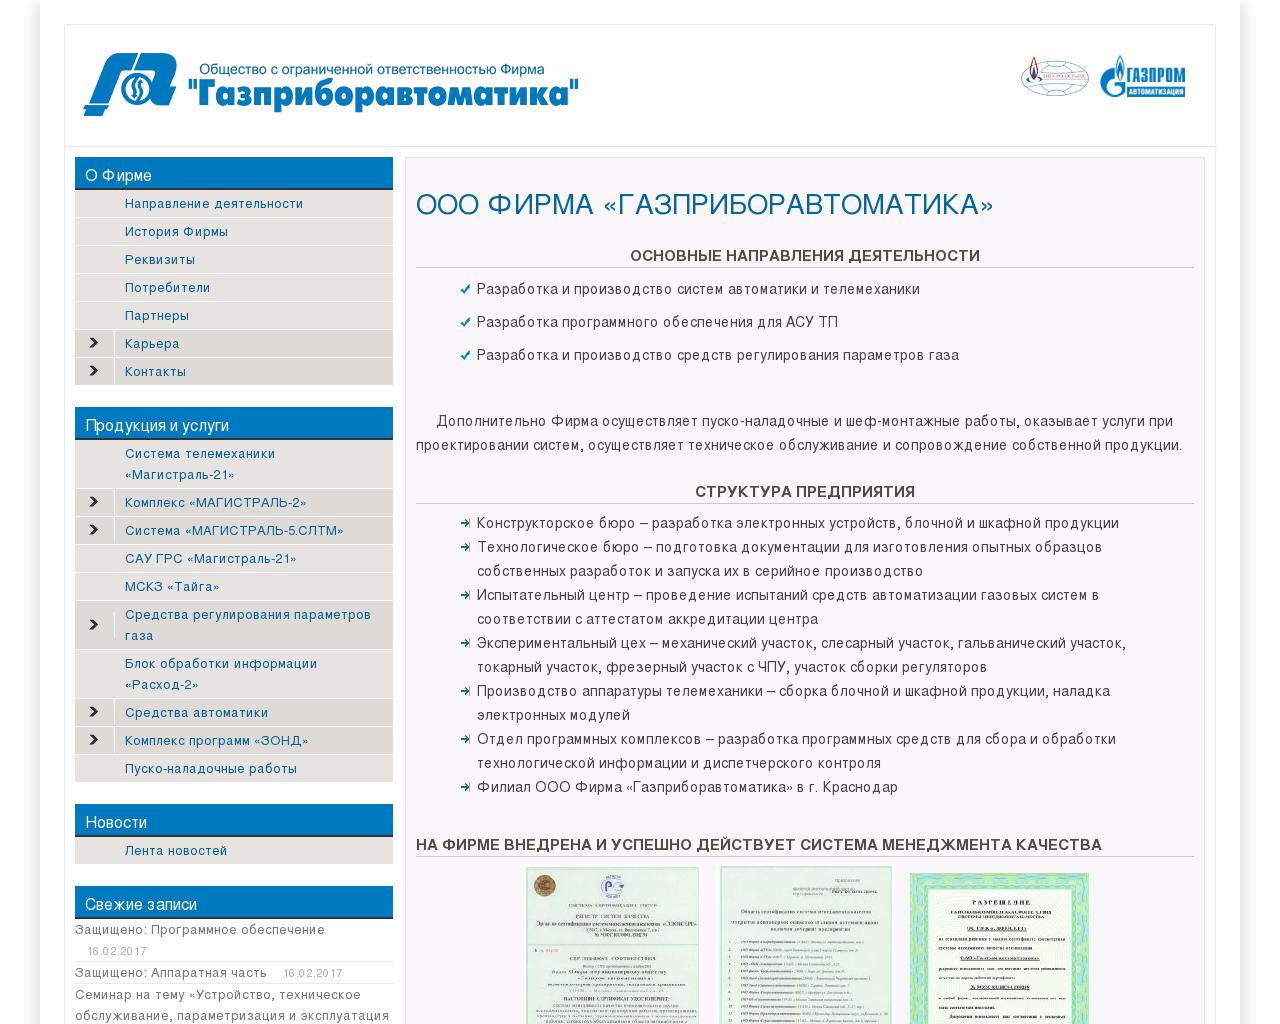 Изображение сайта gpa.ru в разрешении 1280x1024